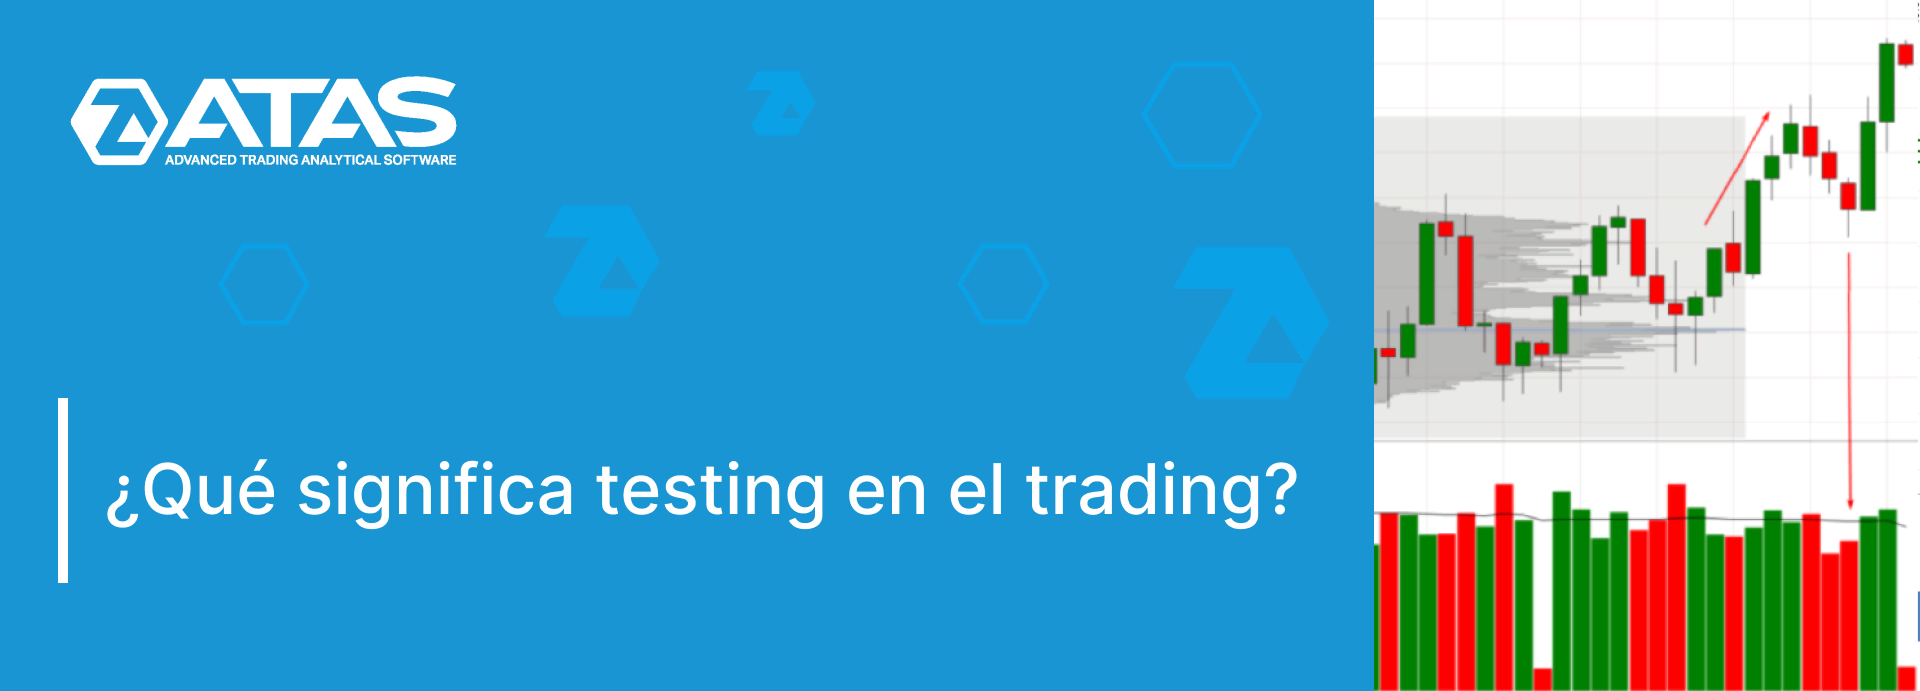 Qué significa testing en el trading